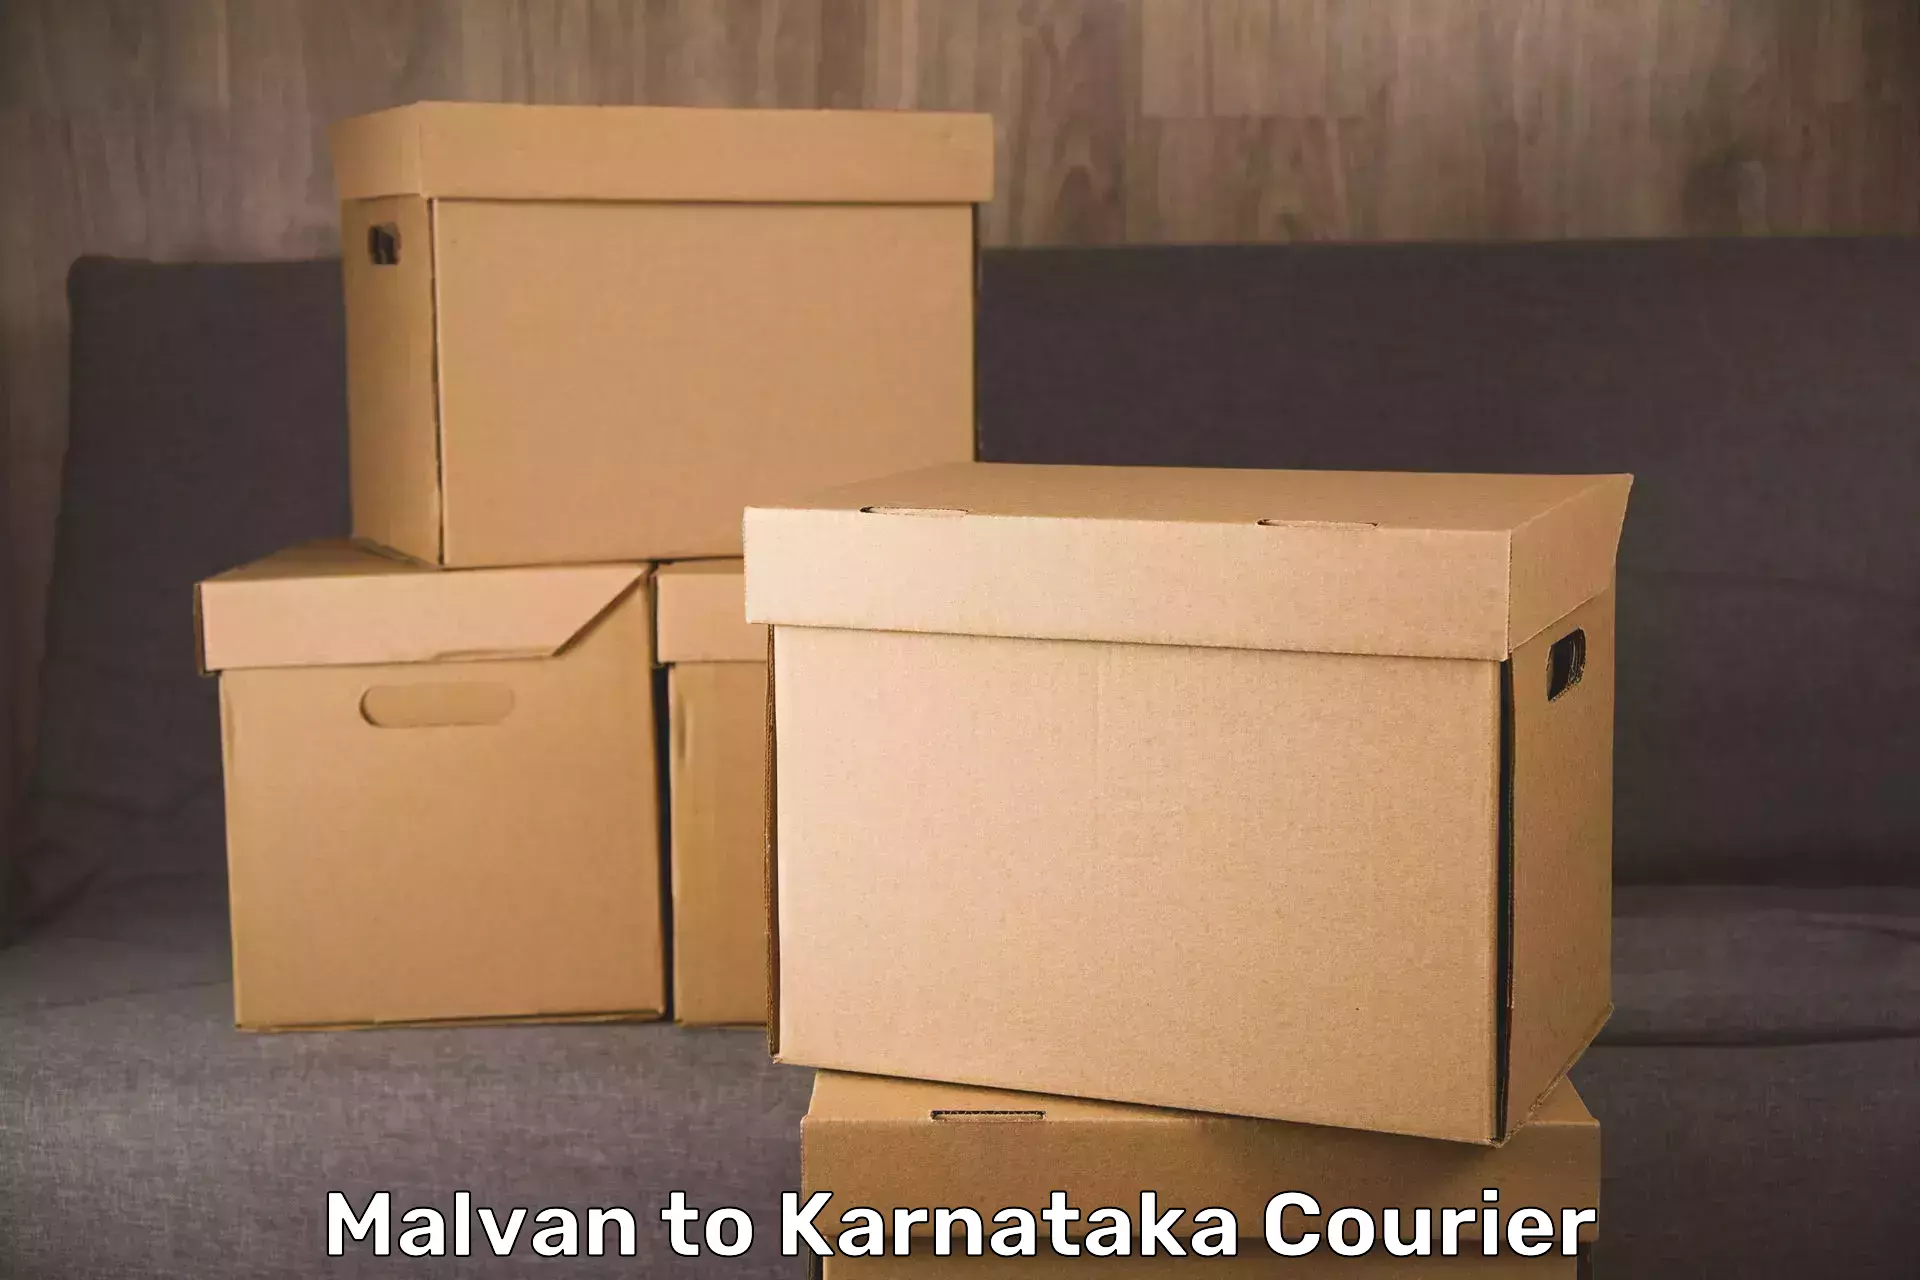 Baggage transport technology Malvan to Karnataka